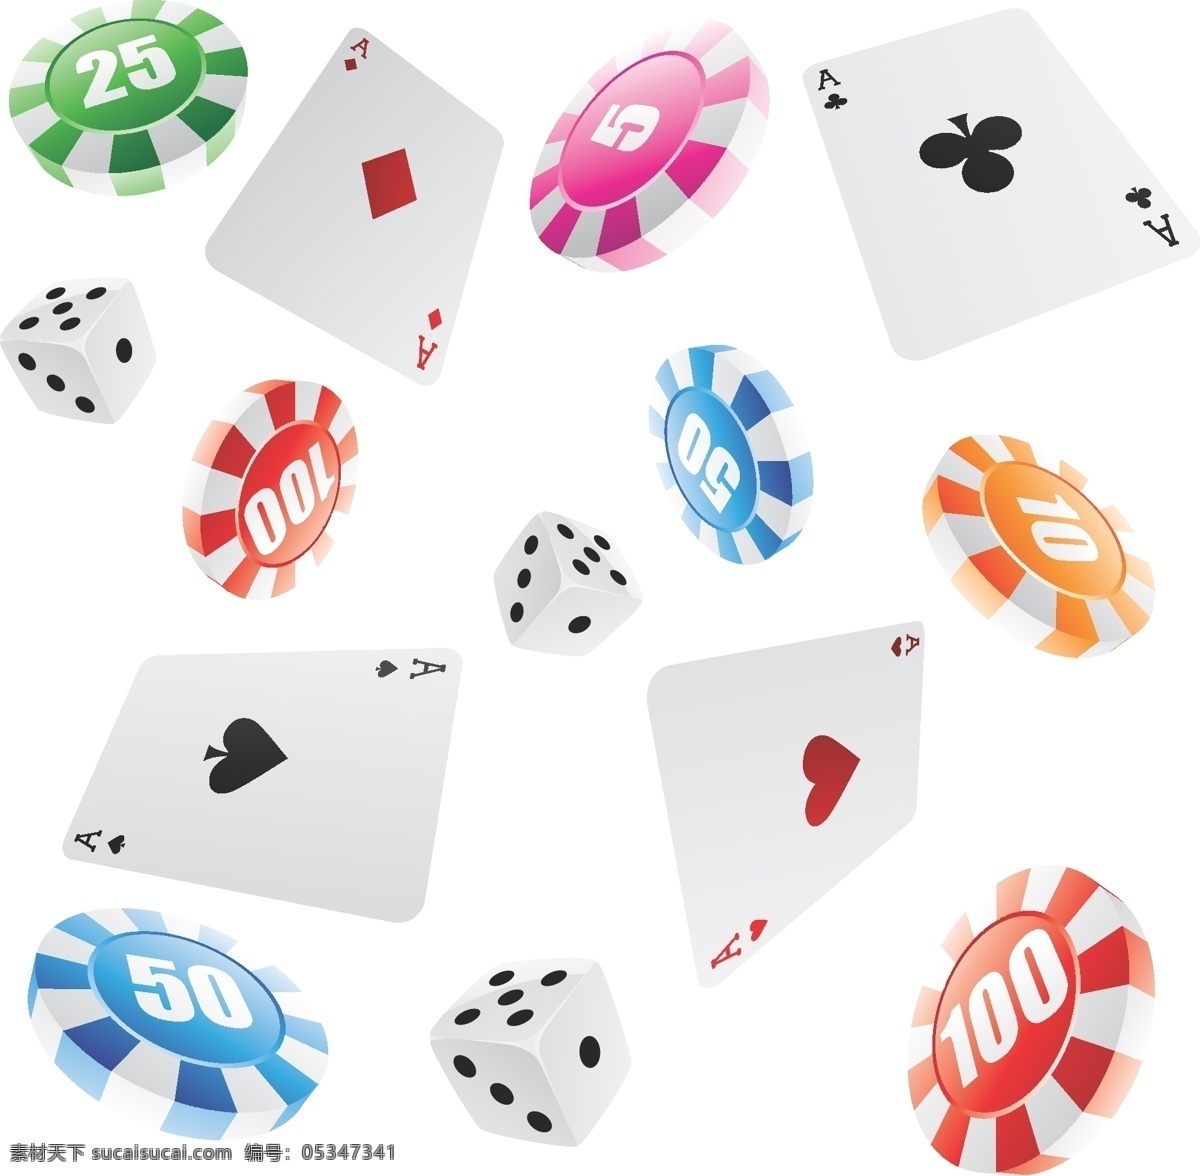 赌博 赌具 图标 矢量 博彩 骰子 色子 筹码 扑克 娱乐休闲 素材eps 矢量图标 小图标 标识标志图标